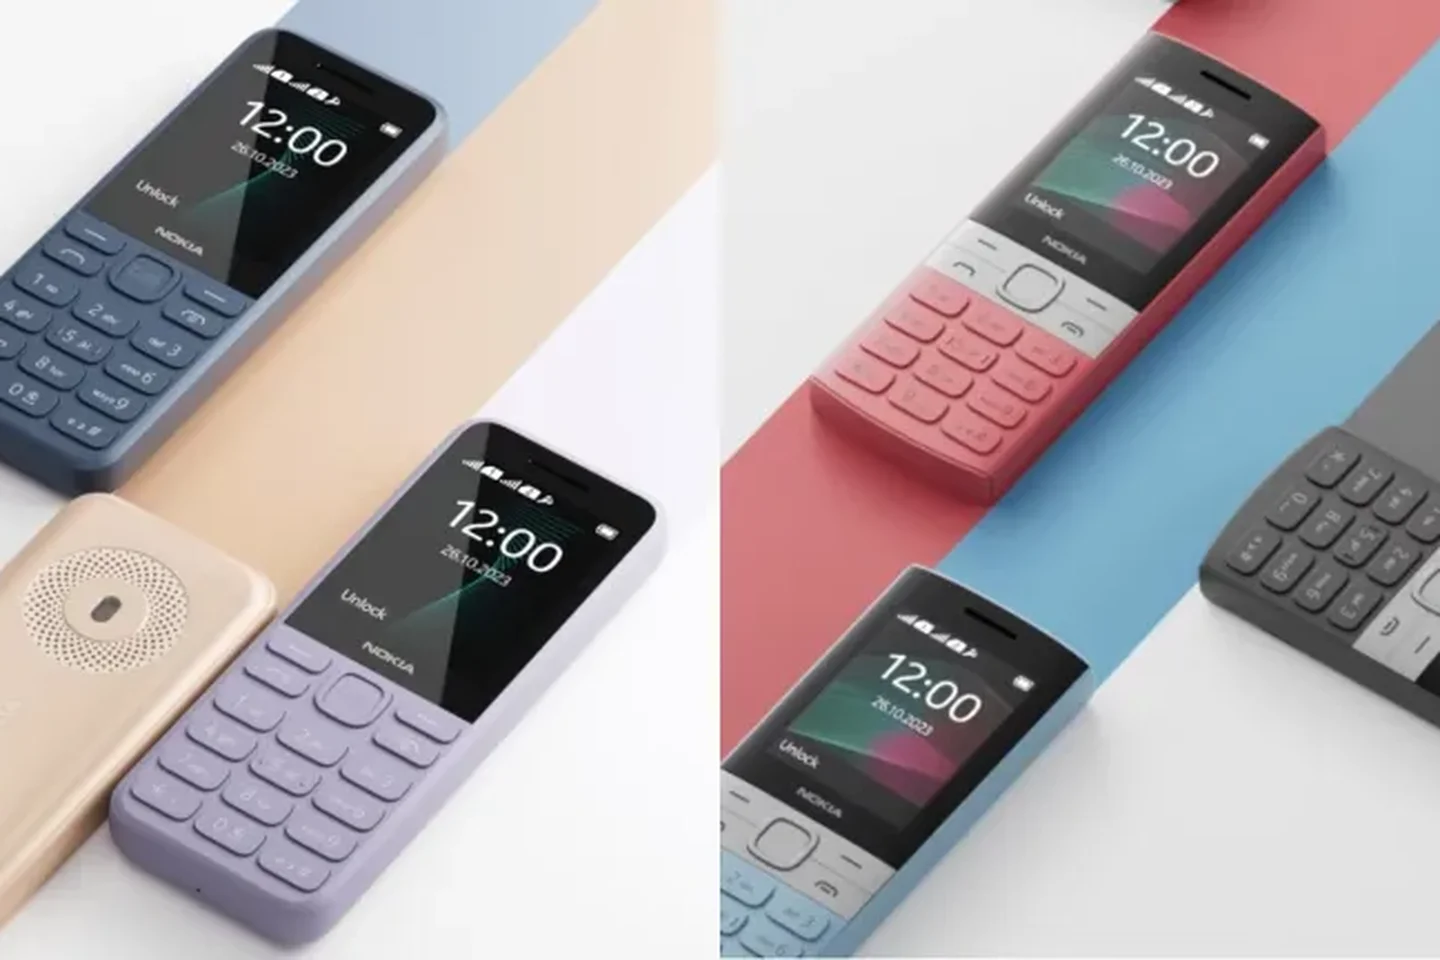 Nokia lanza un nuevo teléfono clásico con grabación automática de